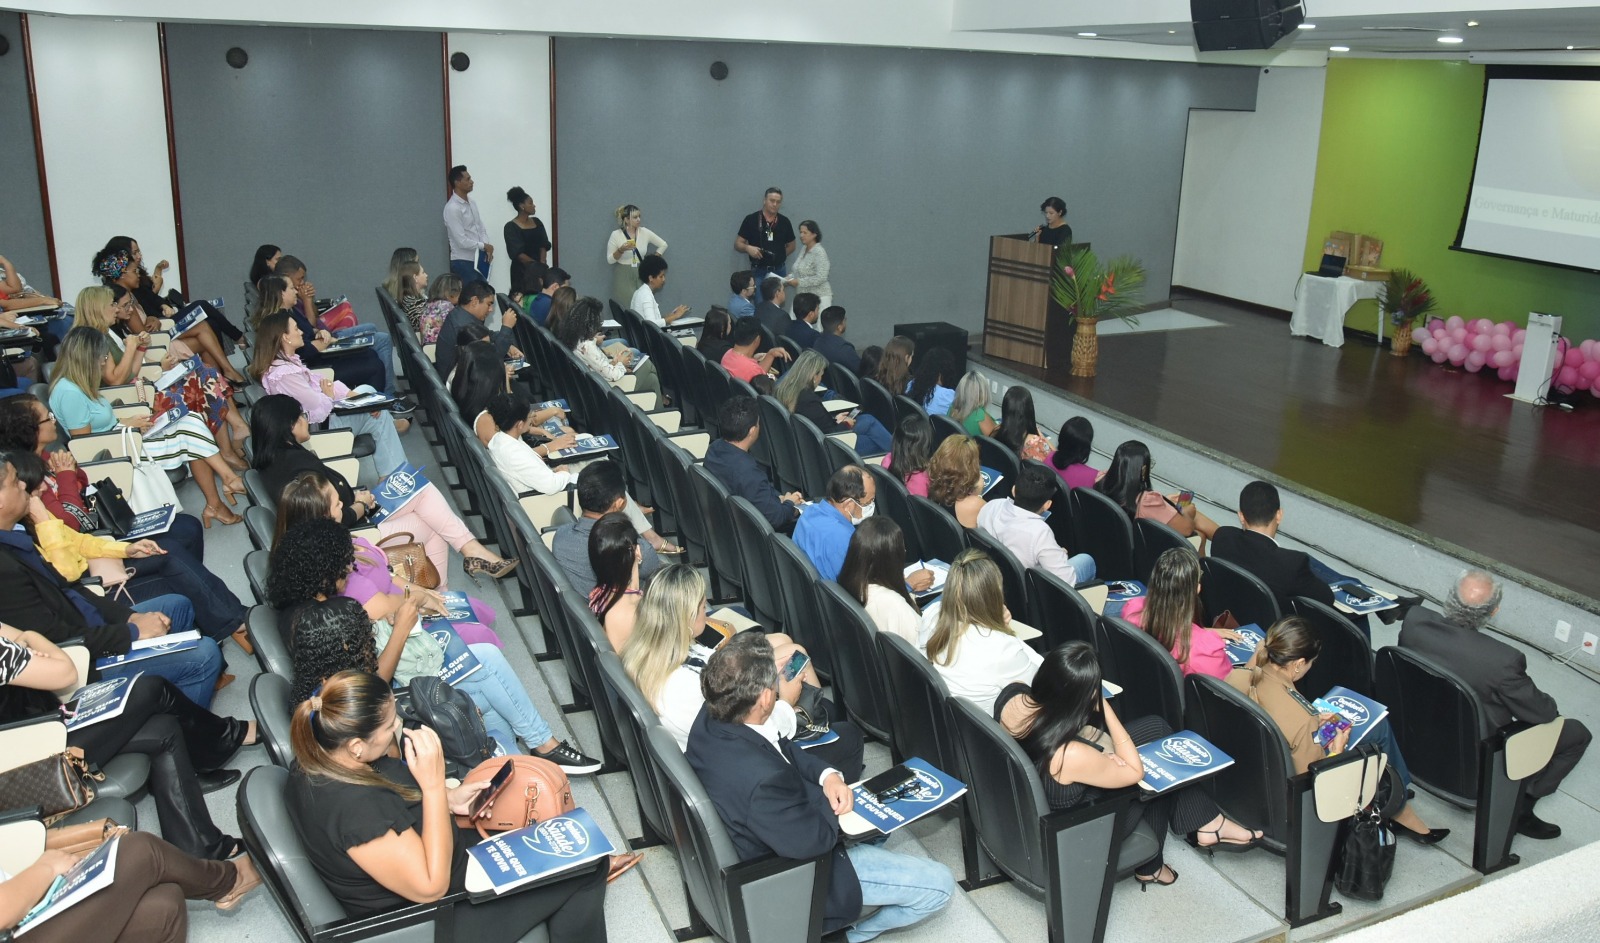  O evento foi realizado do auditório da Assembleia Legislativa - Foto: André Araújo/Governo do Tocantins 